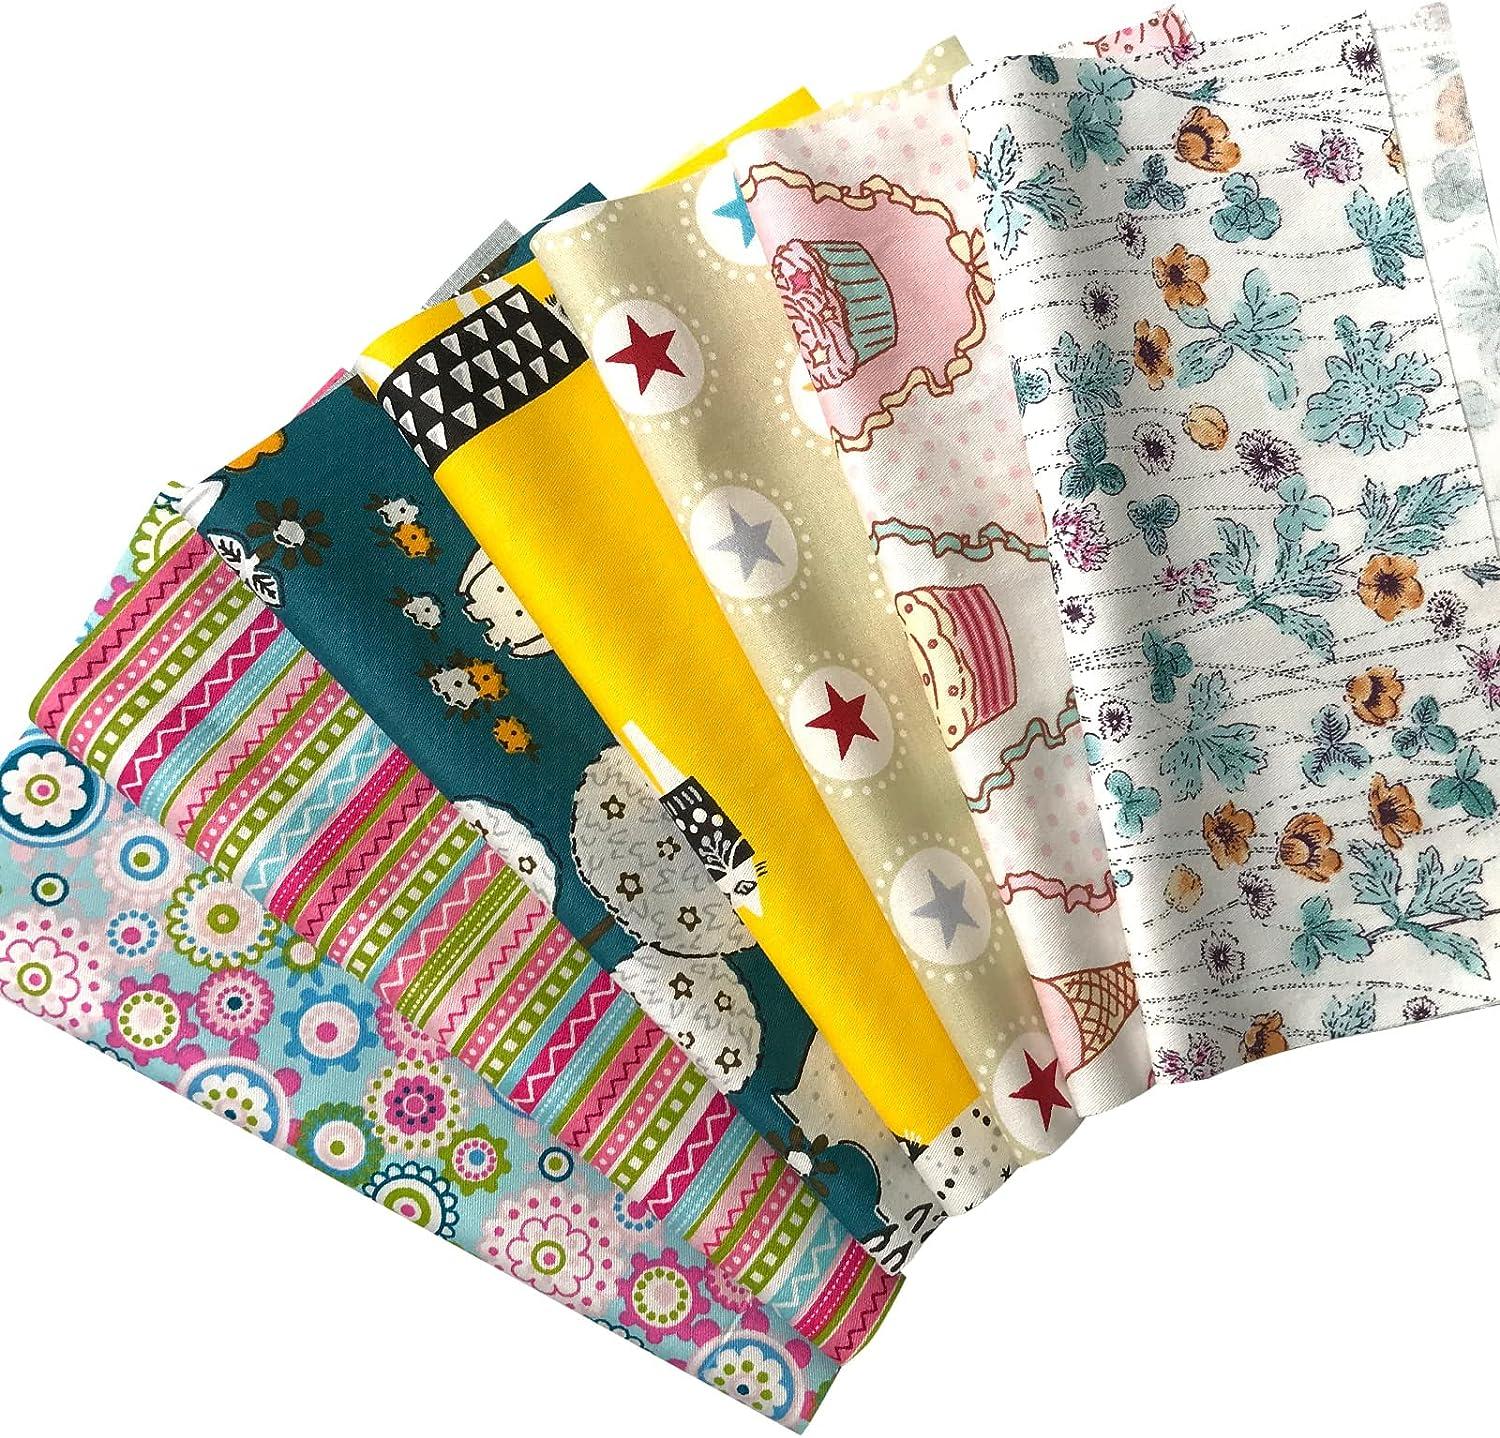 Newamishquilt 4 x 4 10 x 10cm 200 Pcs 100% Precut Cotton Fabric Squares Fabric Bundles for S